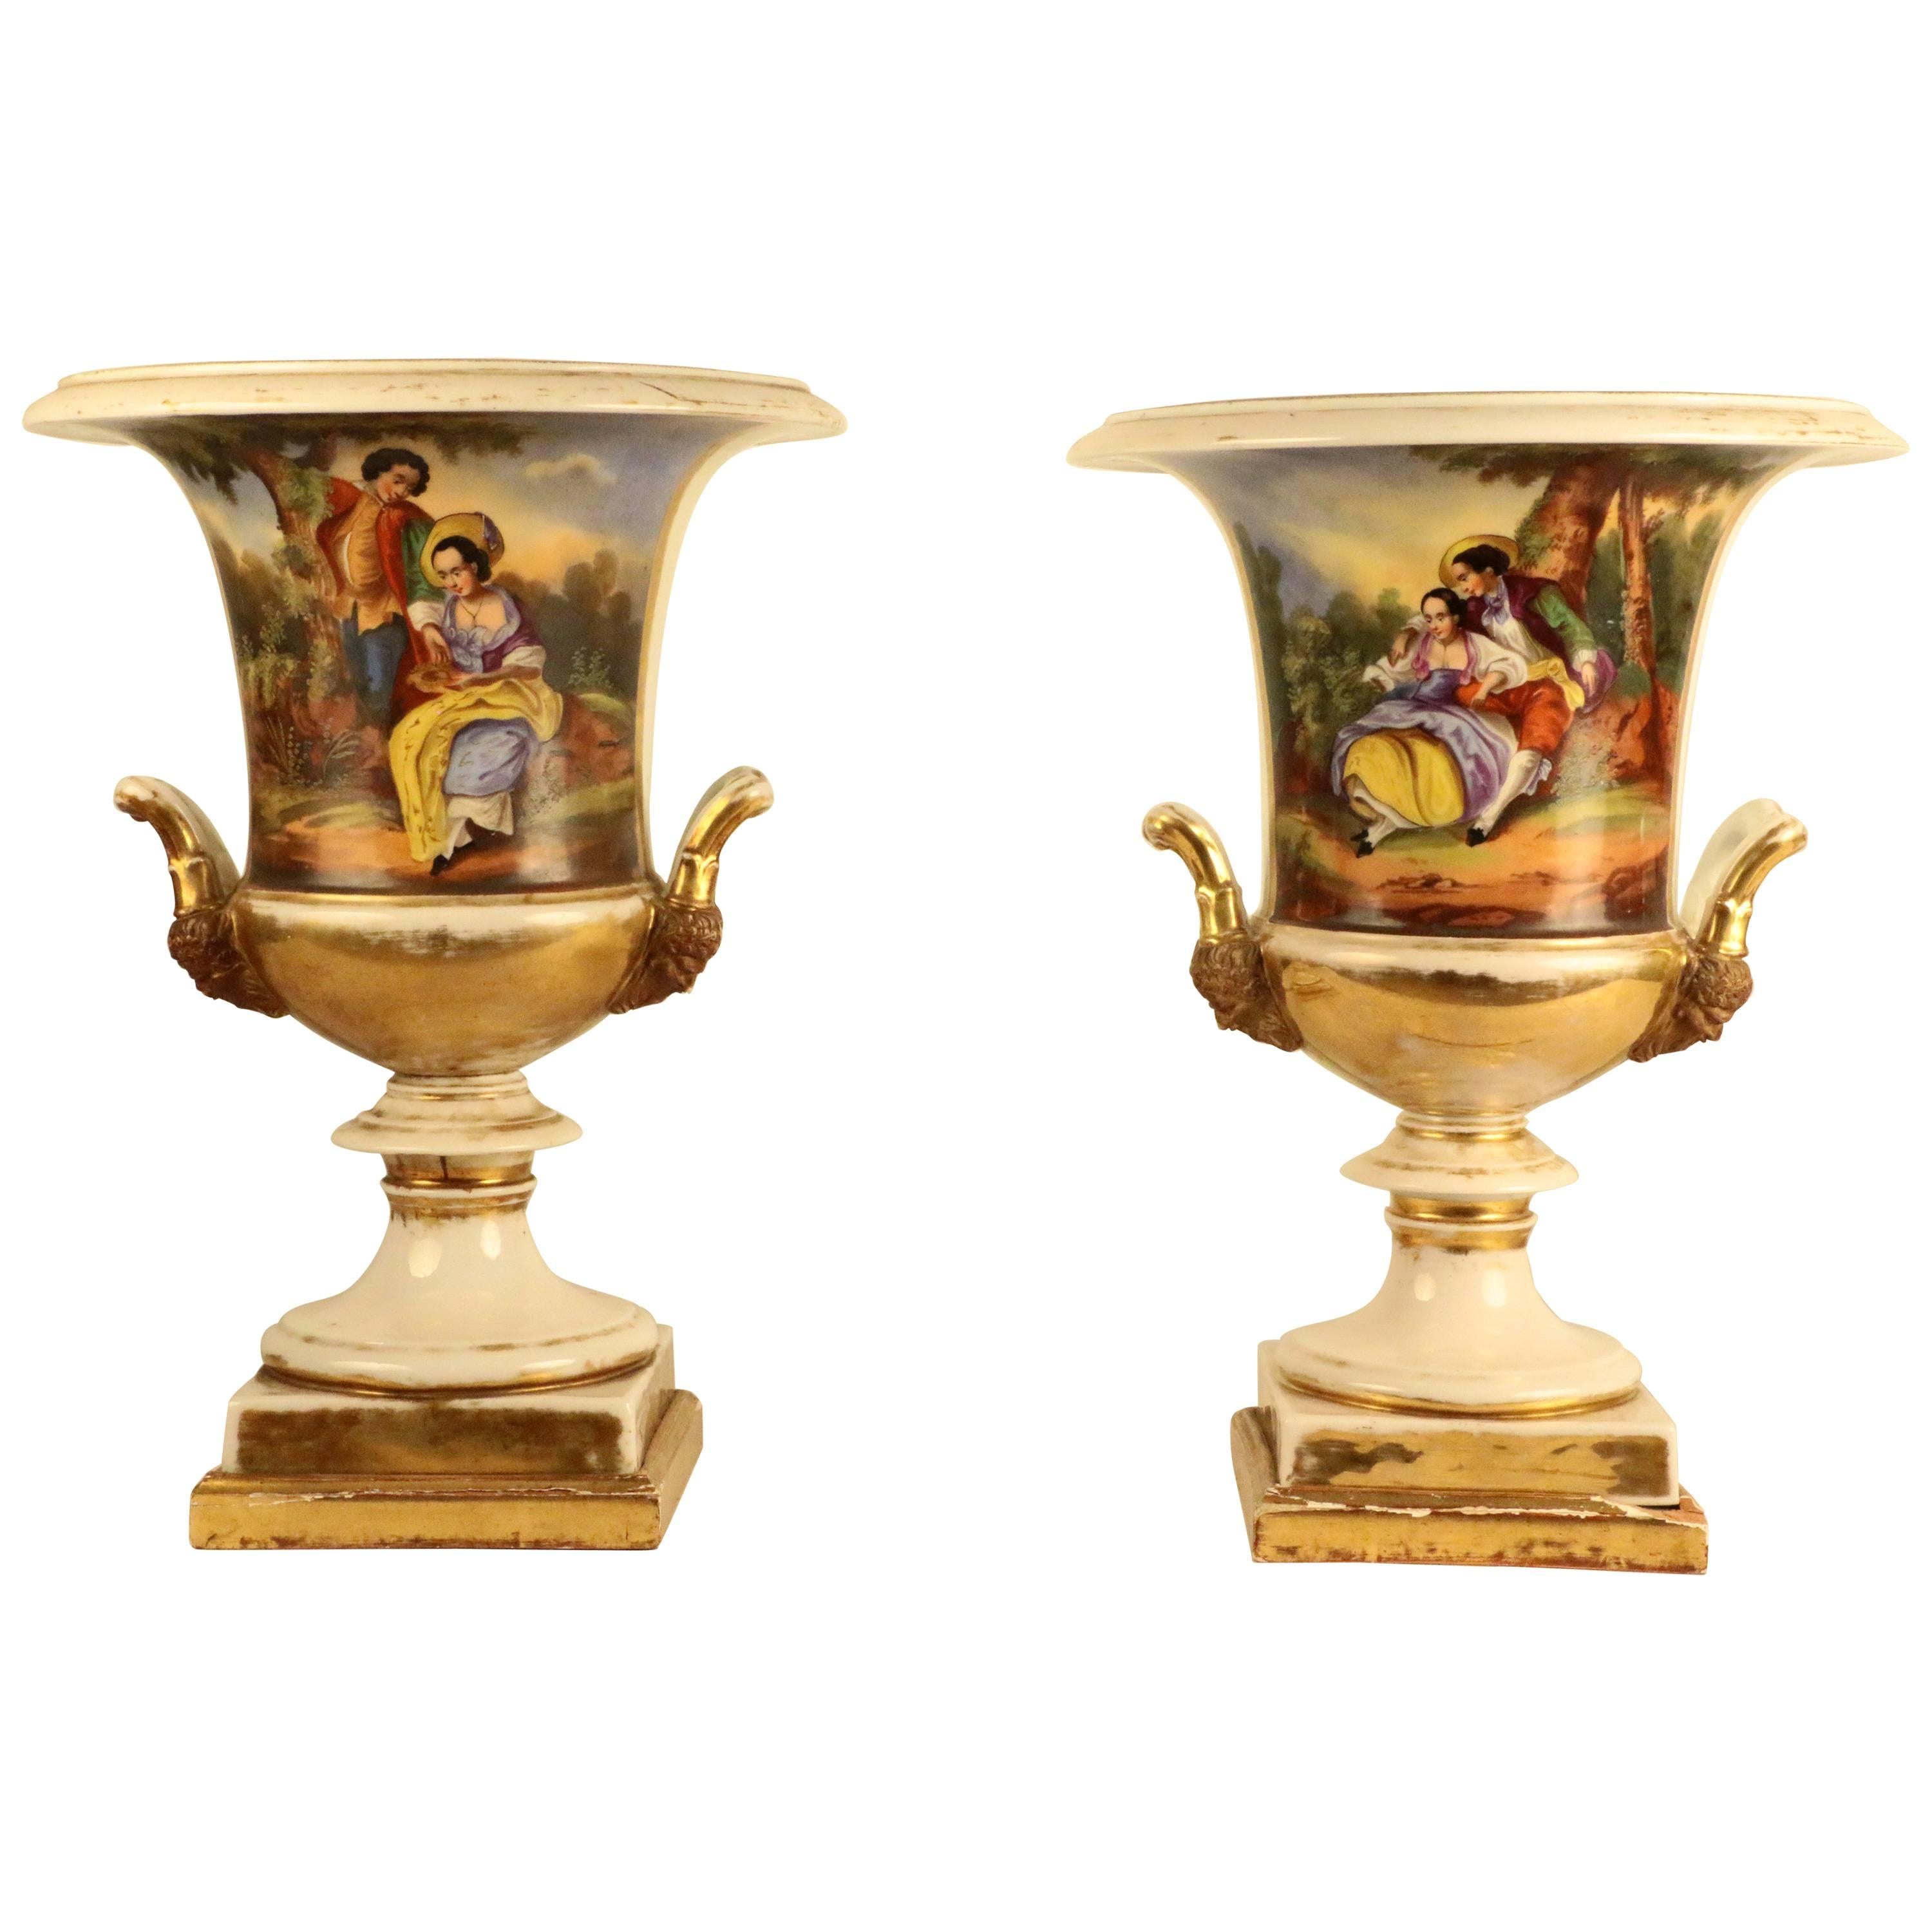 Paire d'urnes en porcelaine de style Empire français